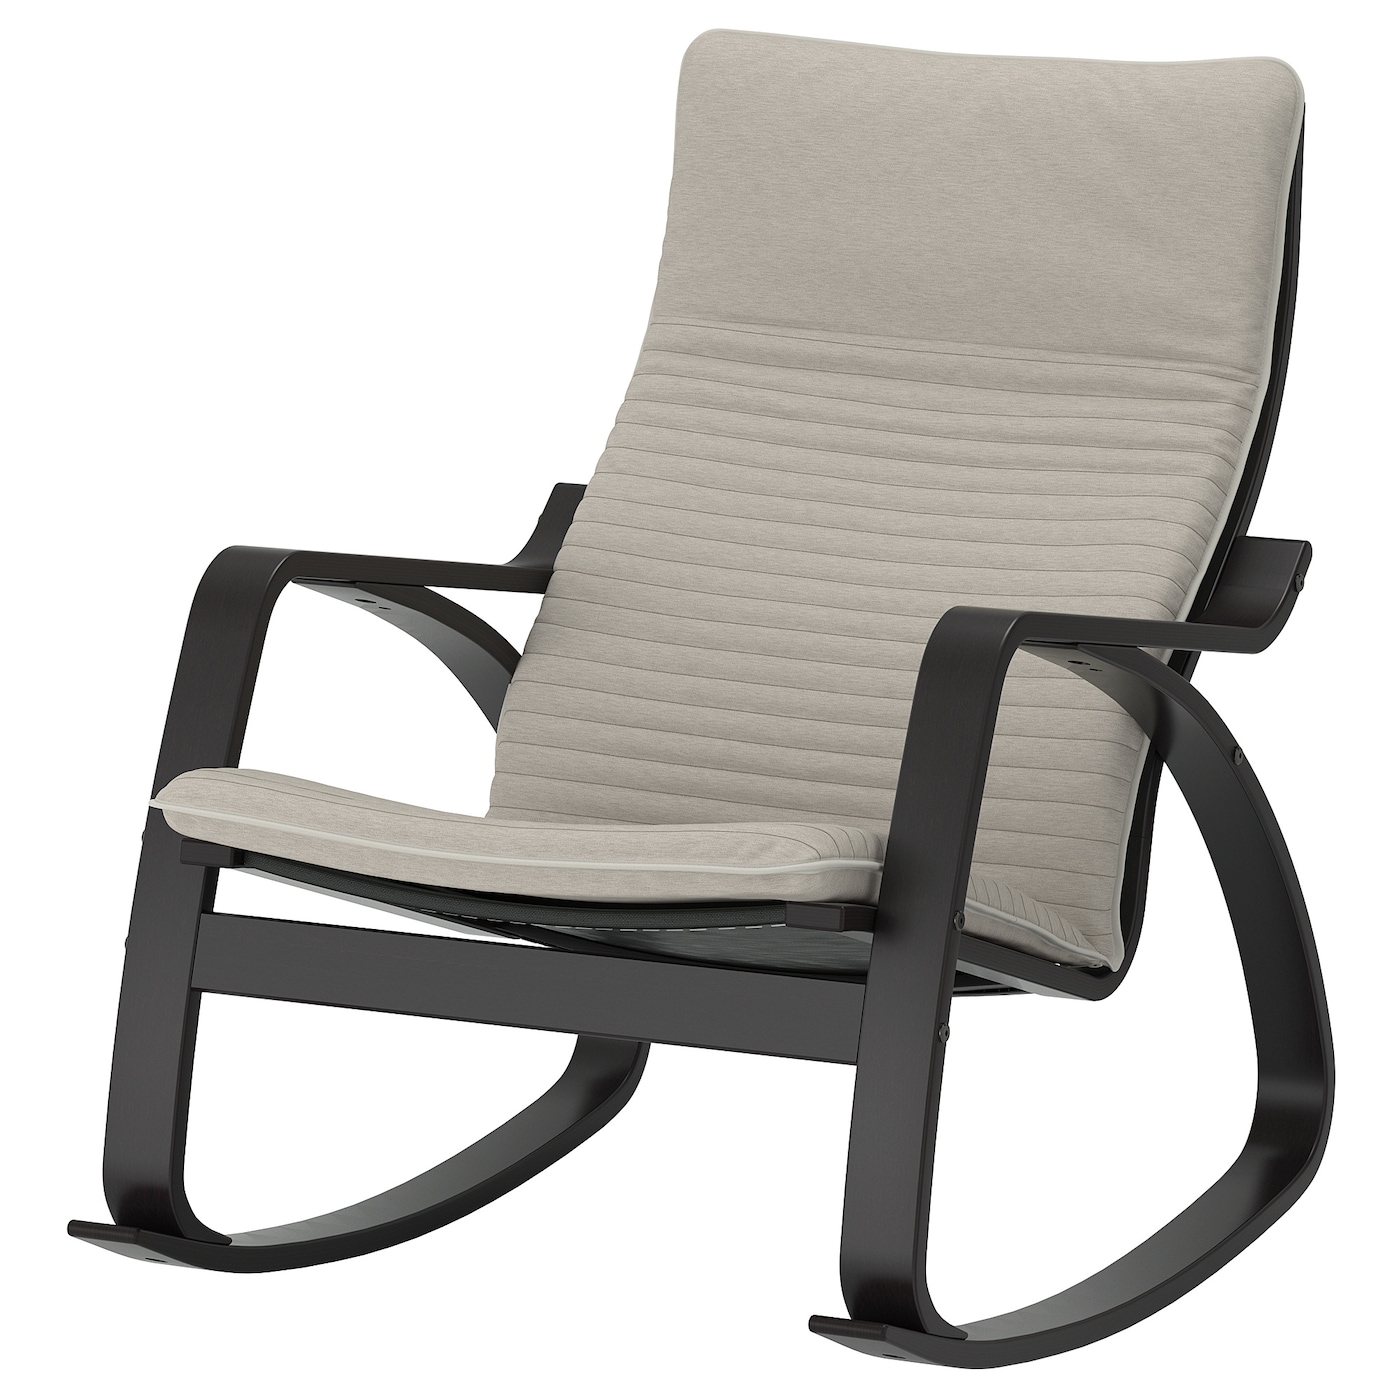 ПОЭНГ Кресло-качалка, черно-коричневый/Книса светло-бежевый POÄNG IKEA кресло качалка сантьяго каркас коричневый сиденье бежевое 131 х 56 х 104 см